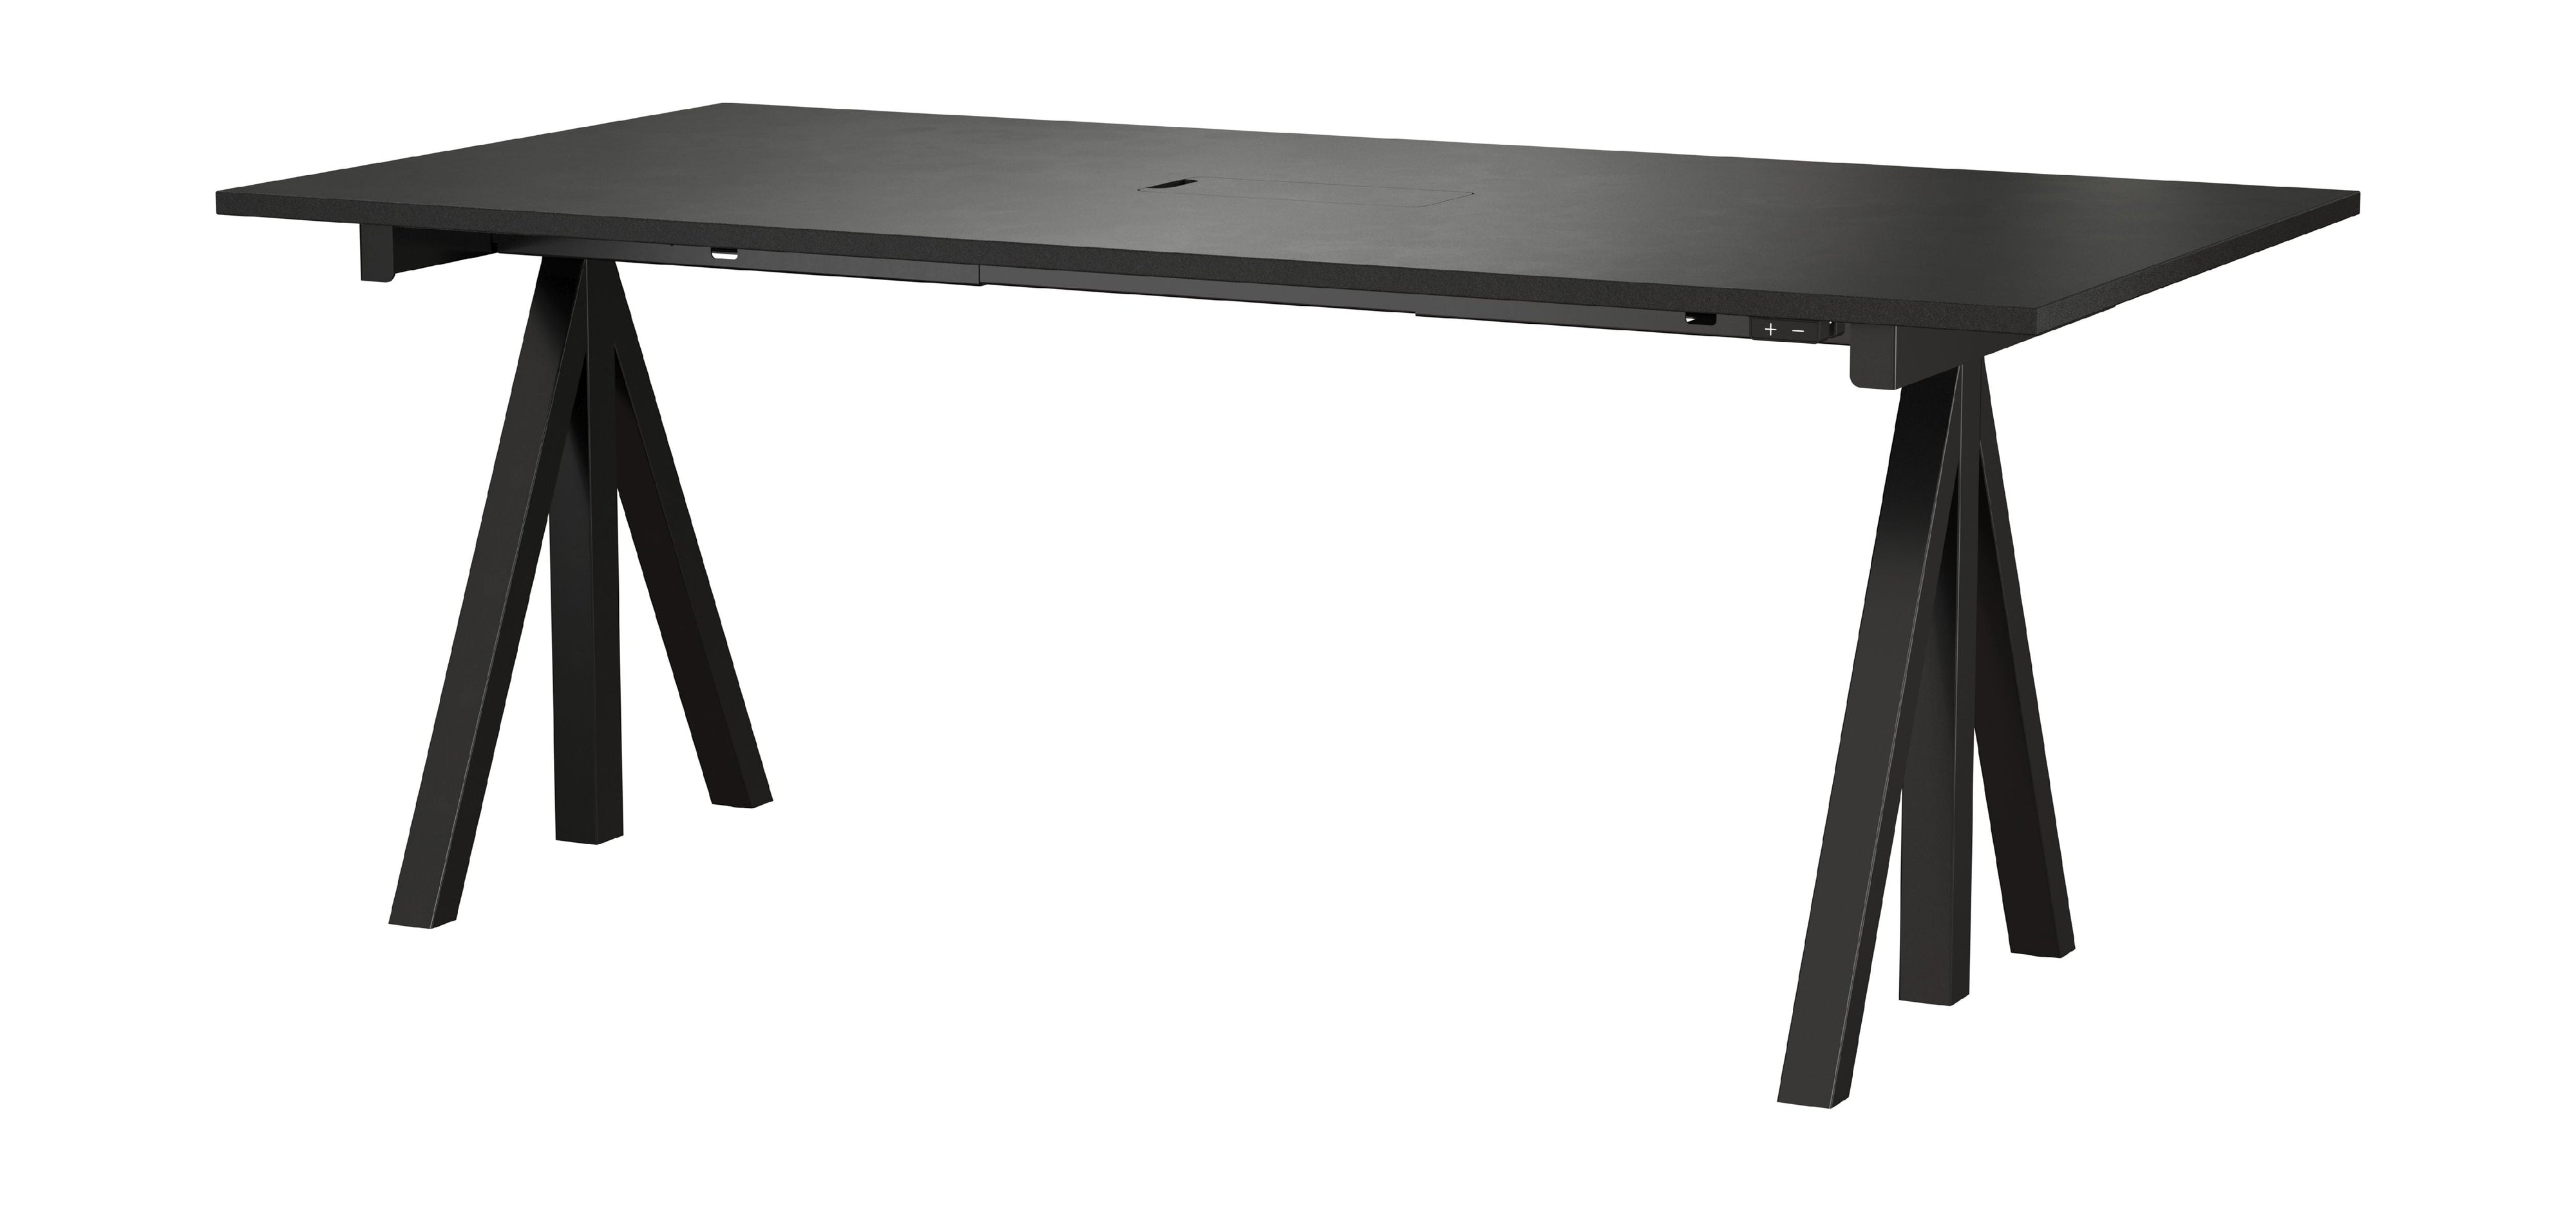 String Furniture Fungerar höjd justerbart skrivbord 90x180 cm, svart/svart